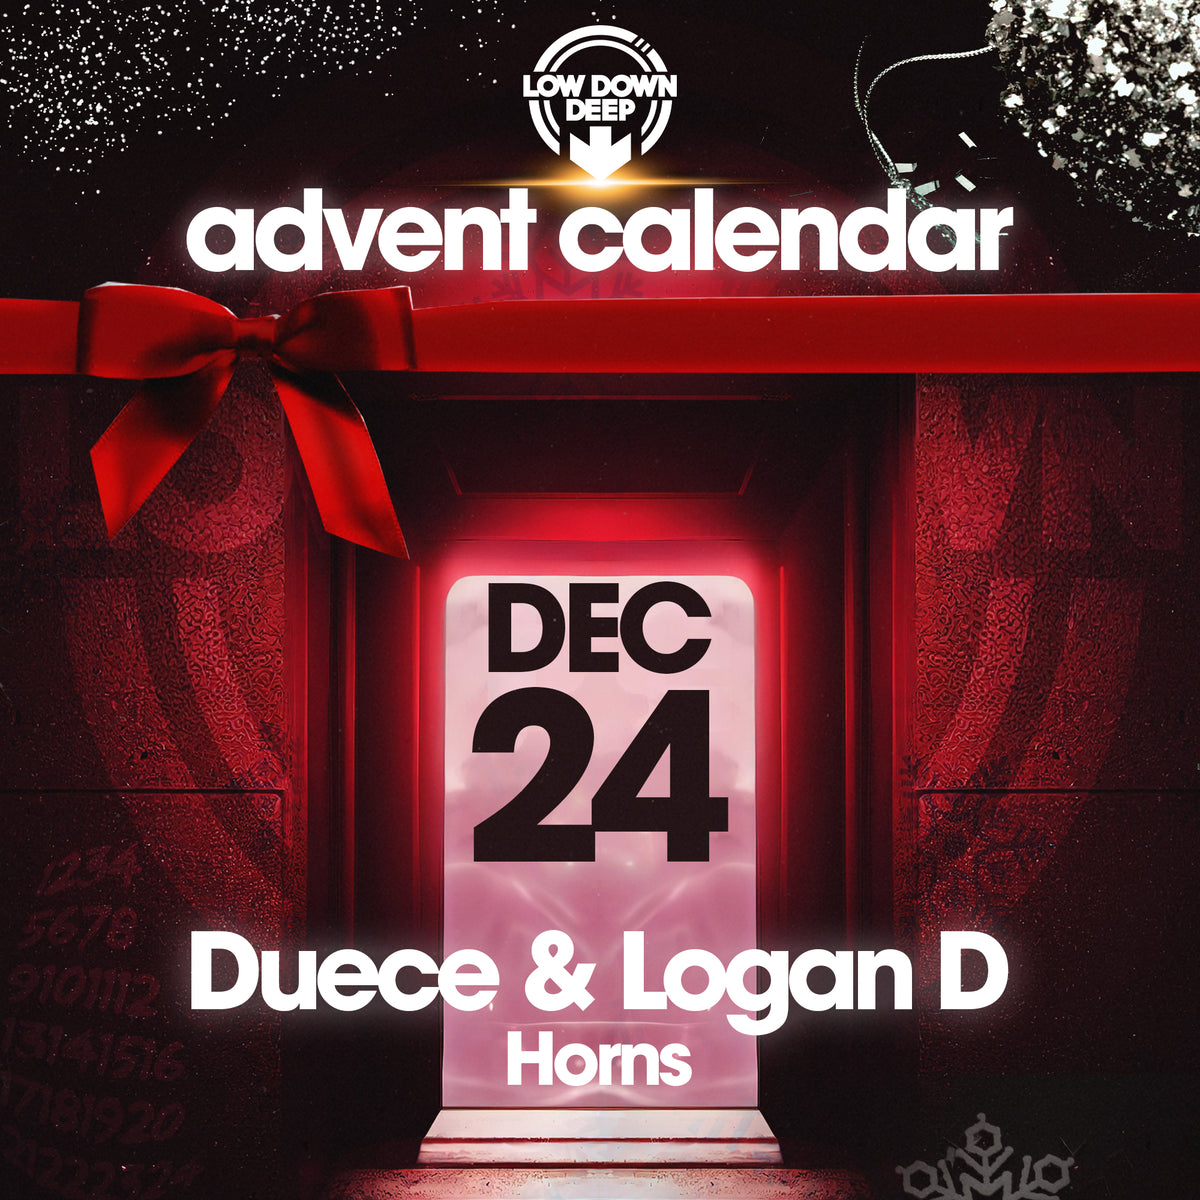 LDDRADV024 - Duece & Logan D 'Horns'